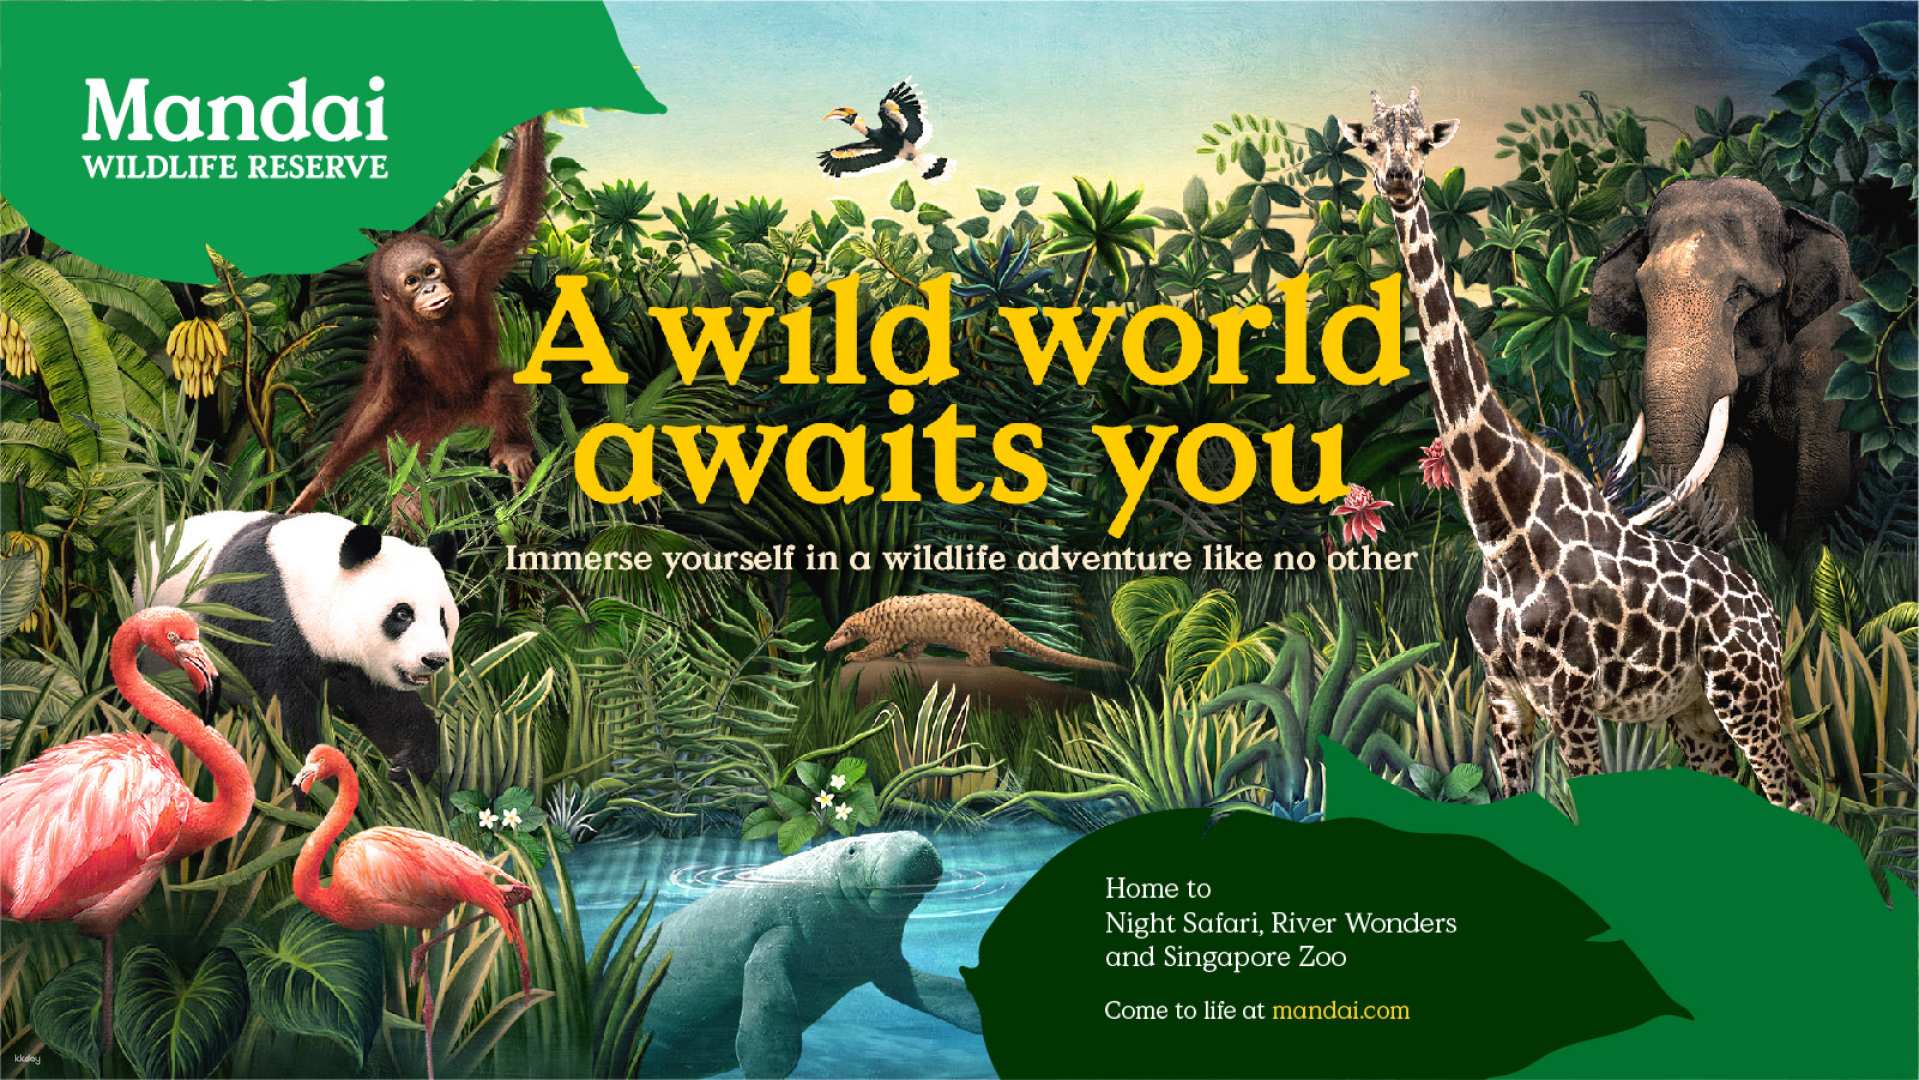 新加坡-萬態野生動物園多園套票| 新加坡動物園&河川生態園&夜間野生動物園及飛禽公園| 限時促銷